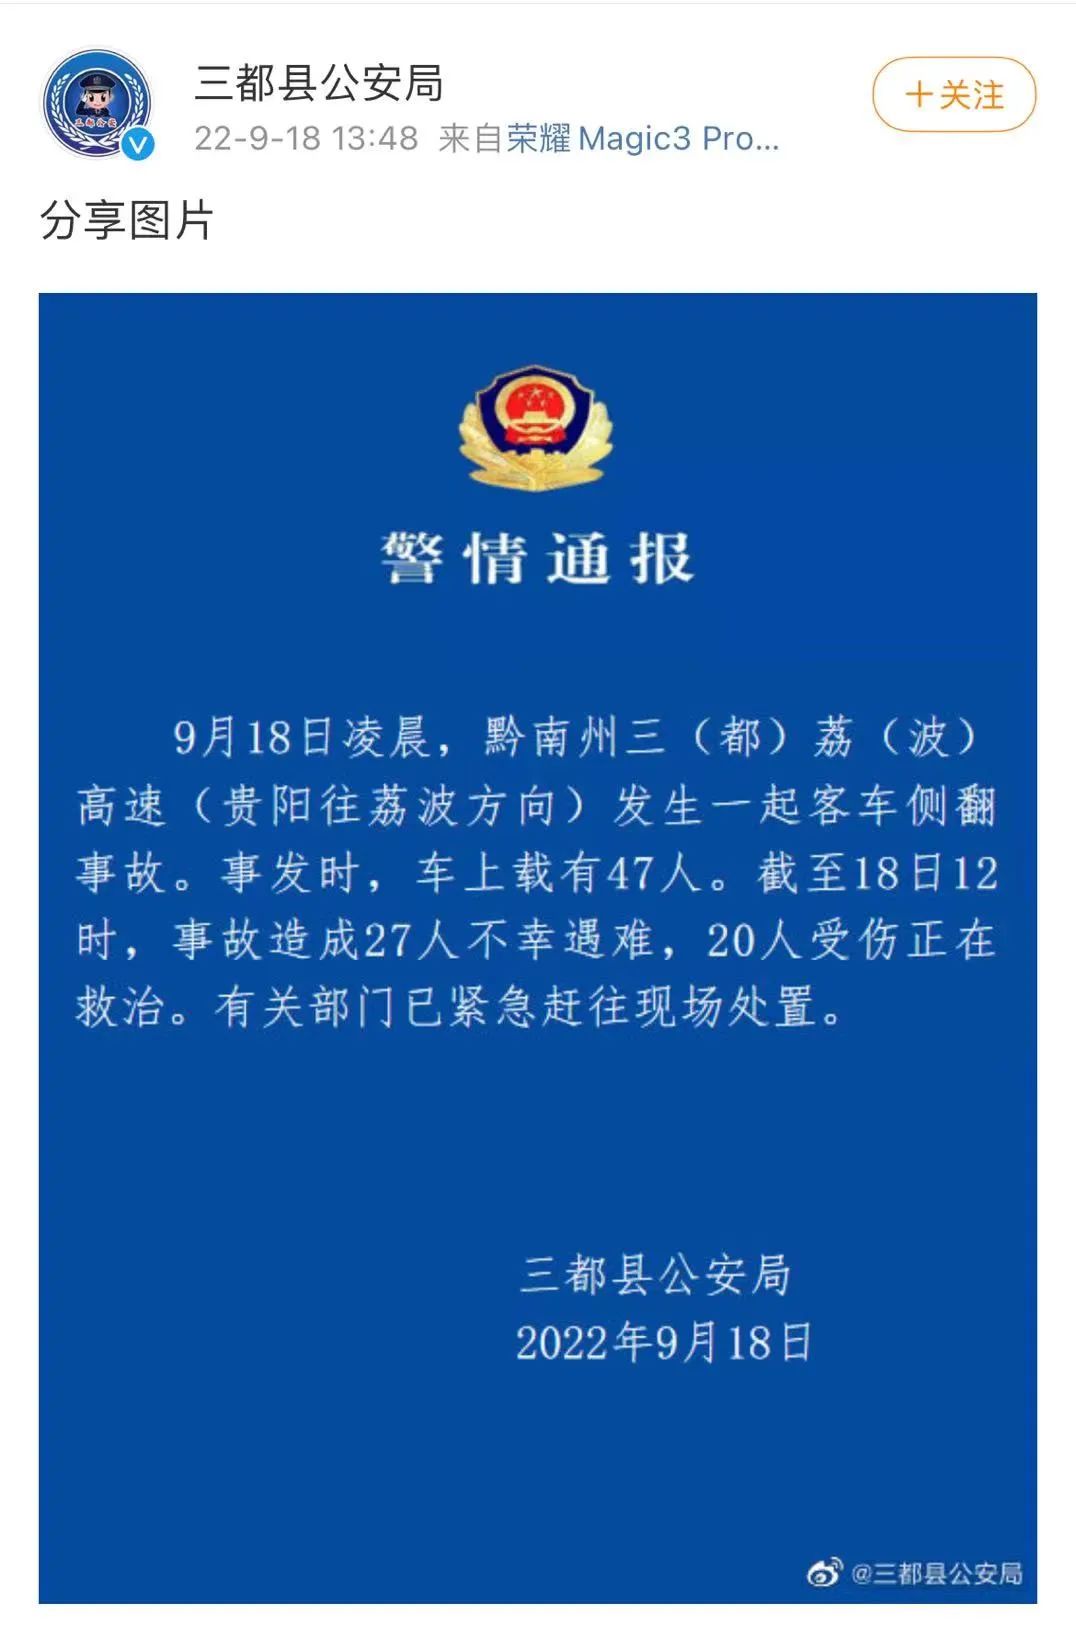 贵州三荔高速施工现场发生山体滑坡 已致3死3失踪-国际在线